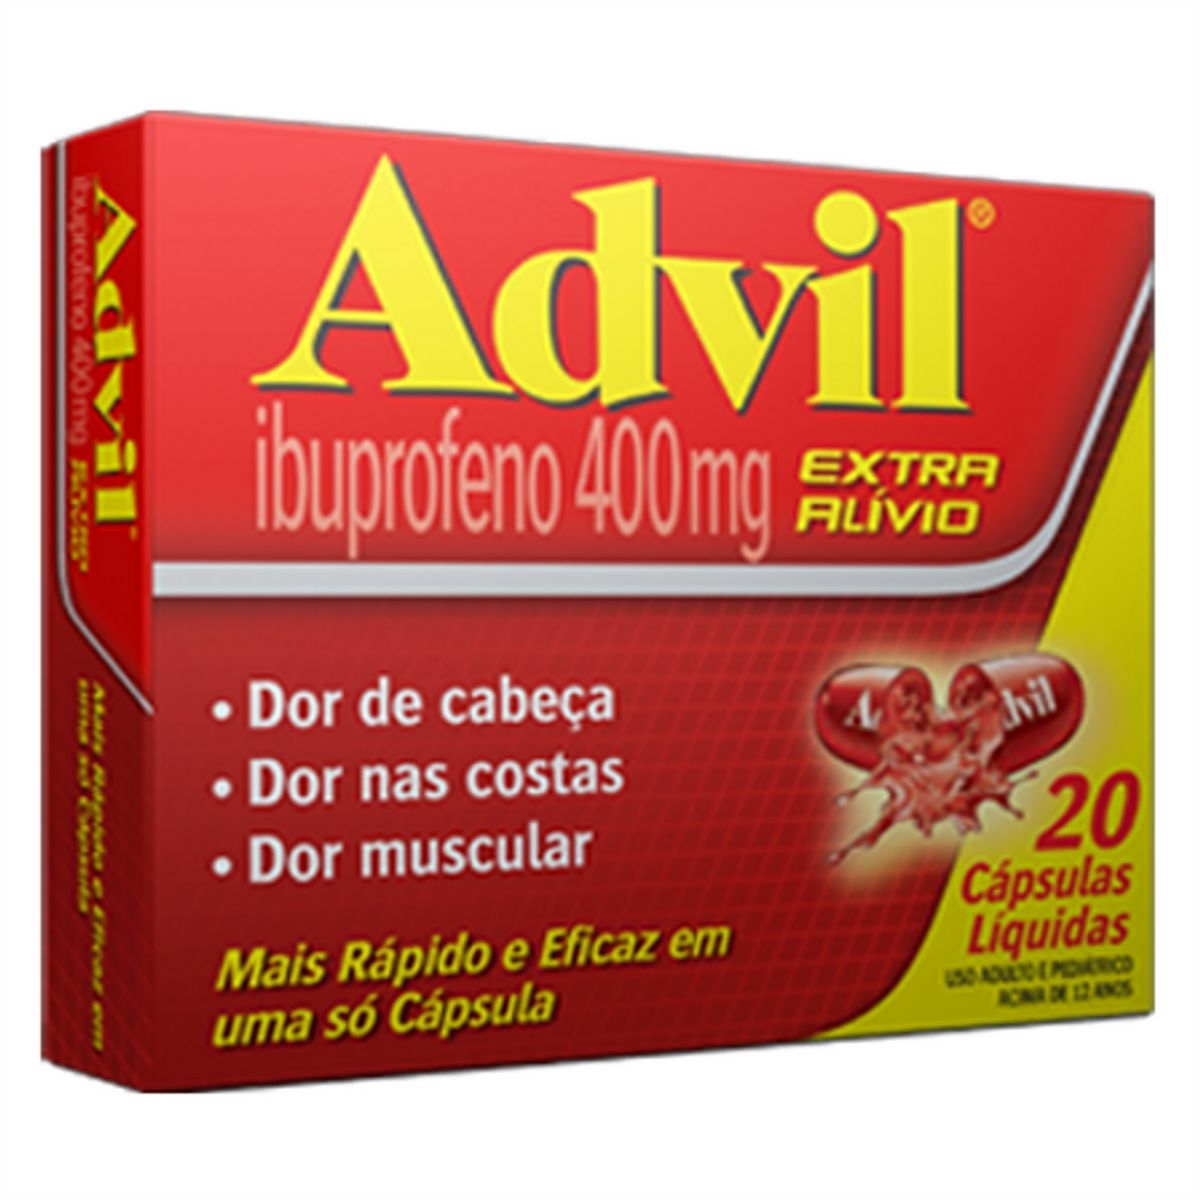 Advil Extra Alívio 400mg 20 Cápsulas Gelatinosas